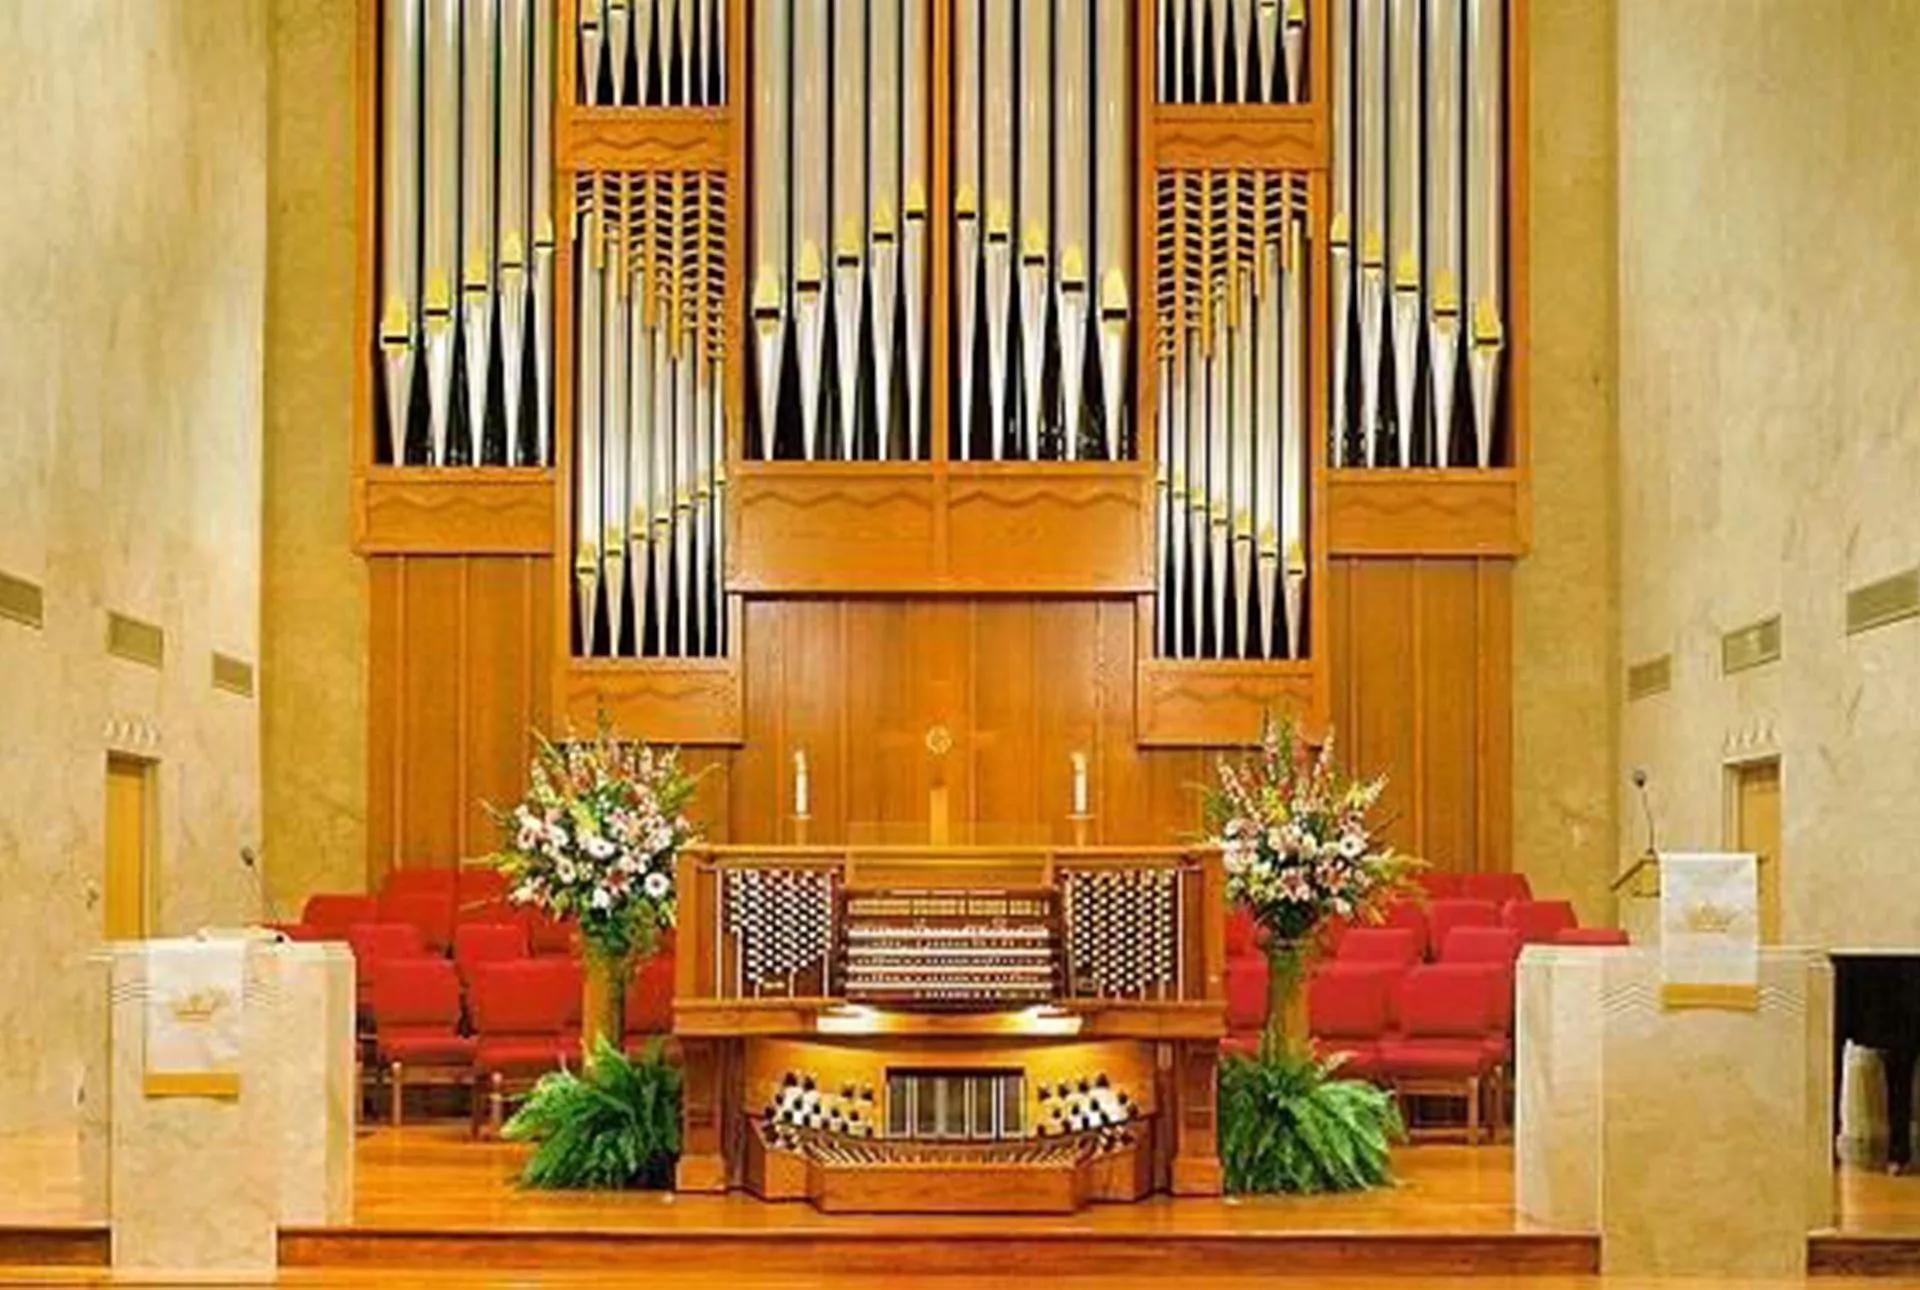 ムーディー・メソジスト教会の祭壇と説教台